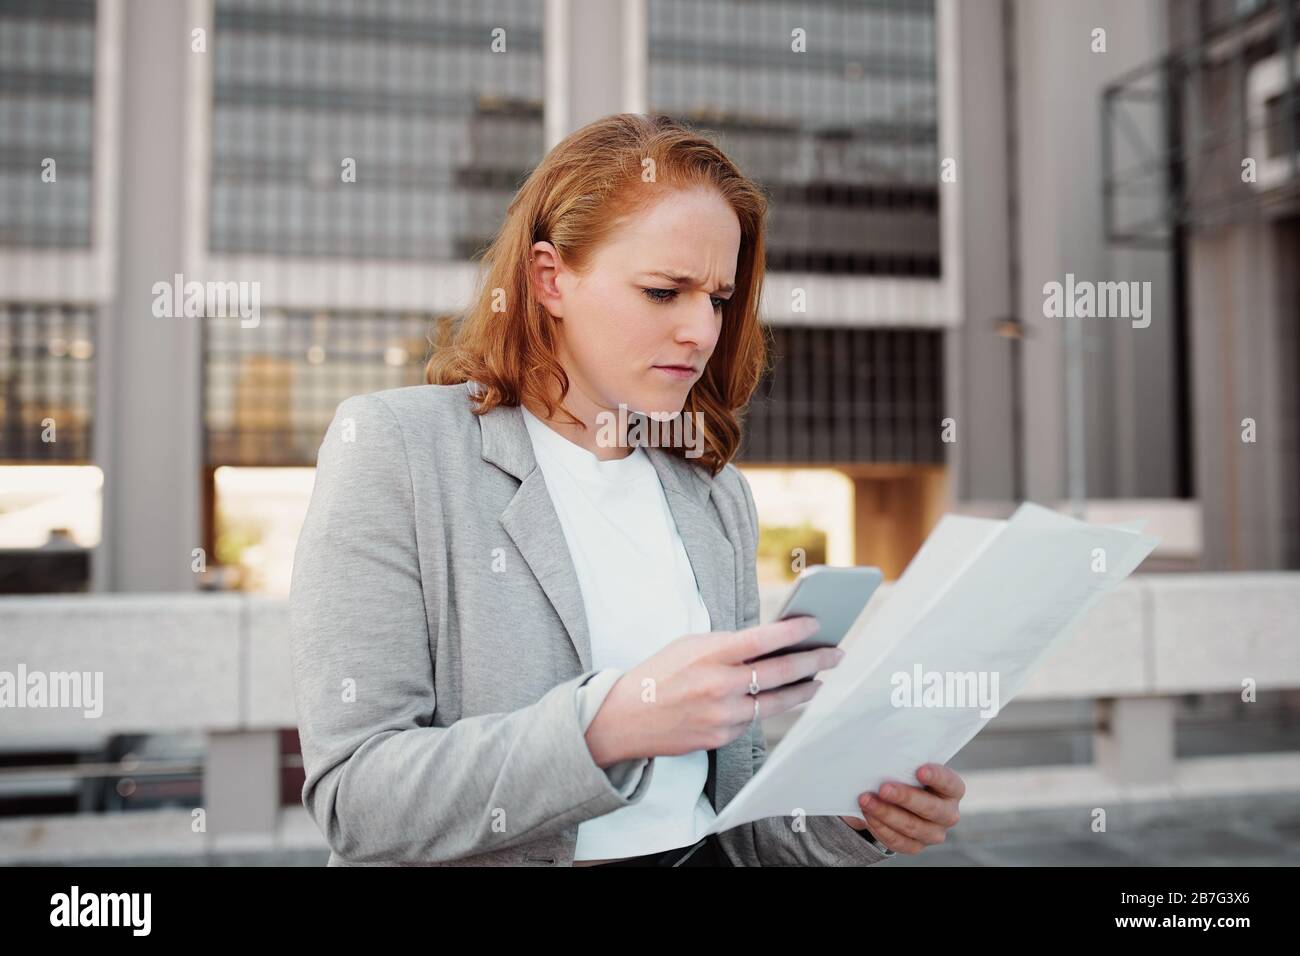 Mujer frustrada con ropa formal utilizando el smartphone mientras lee documentos y realiza cambios al aire libre Foto de stock